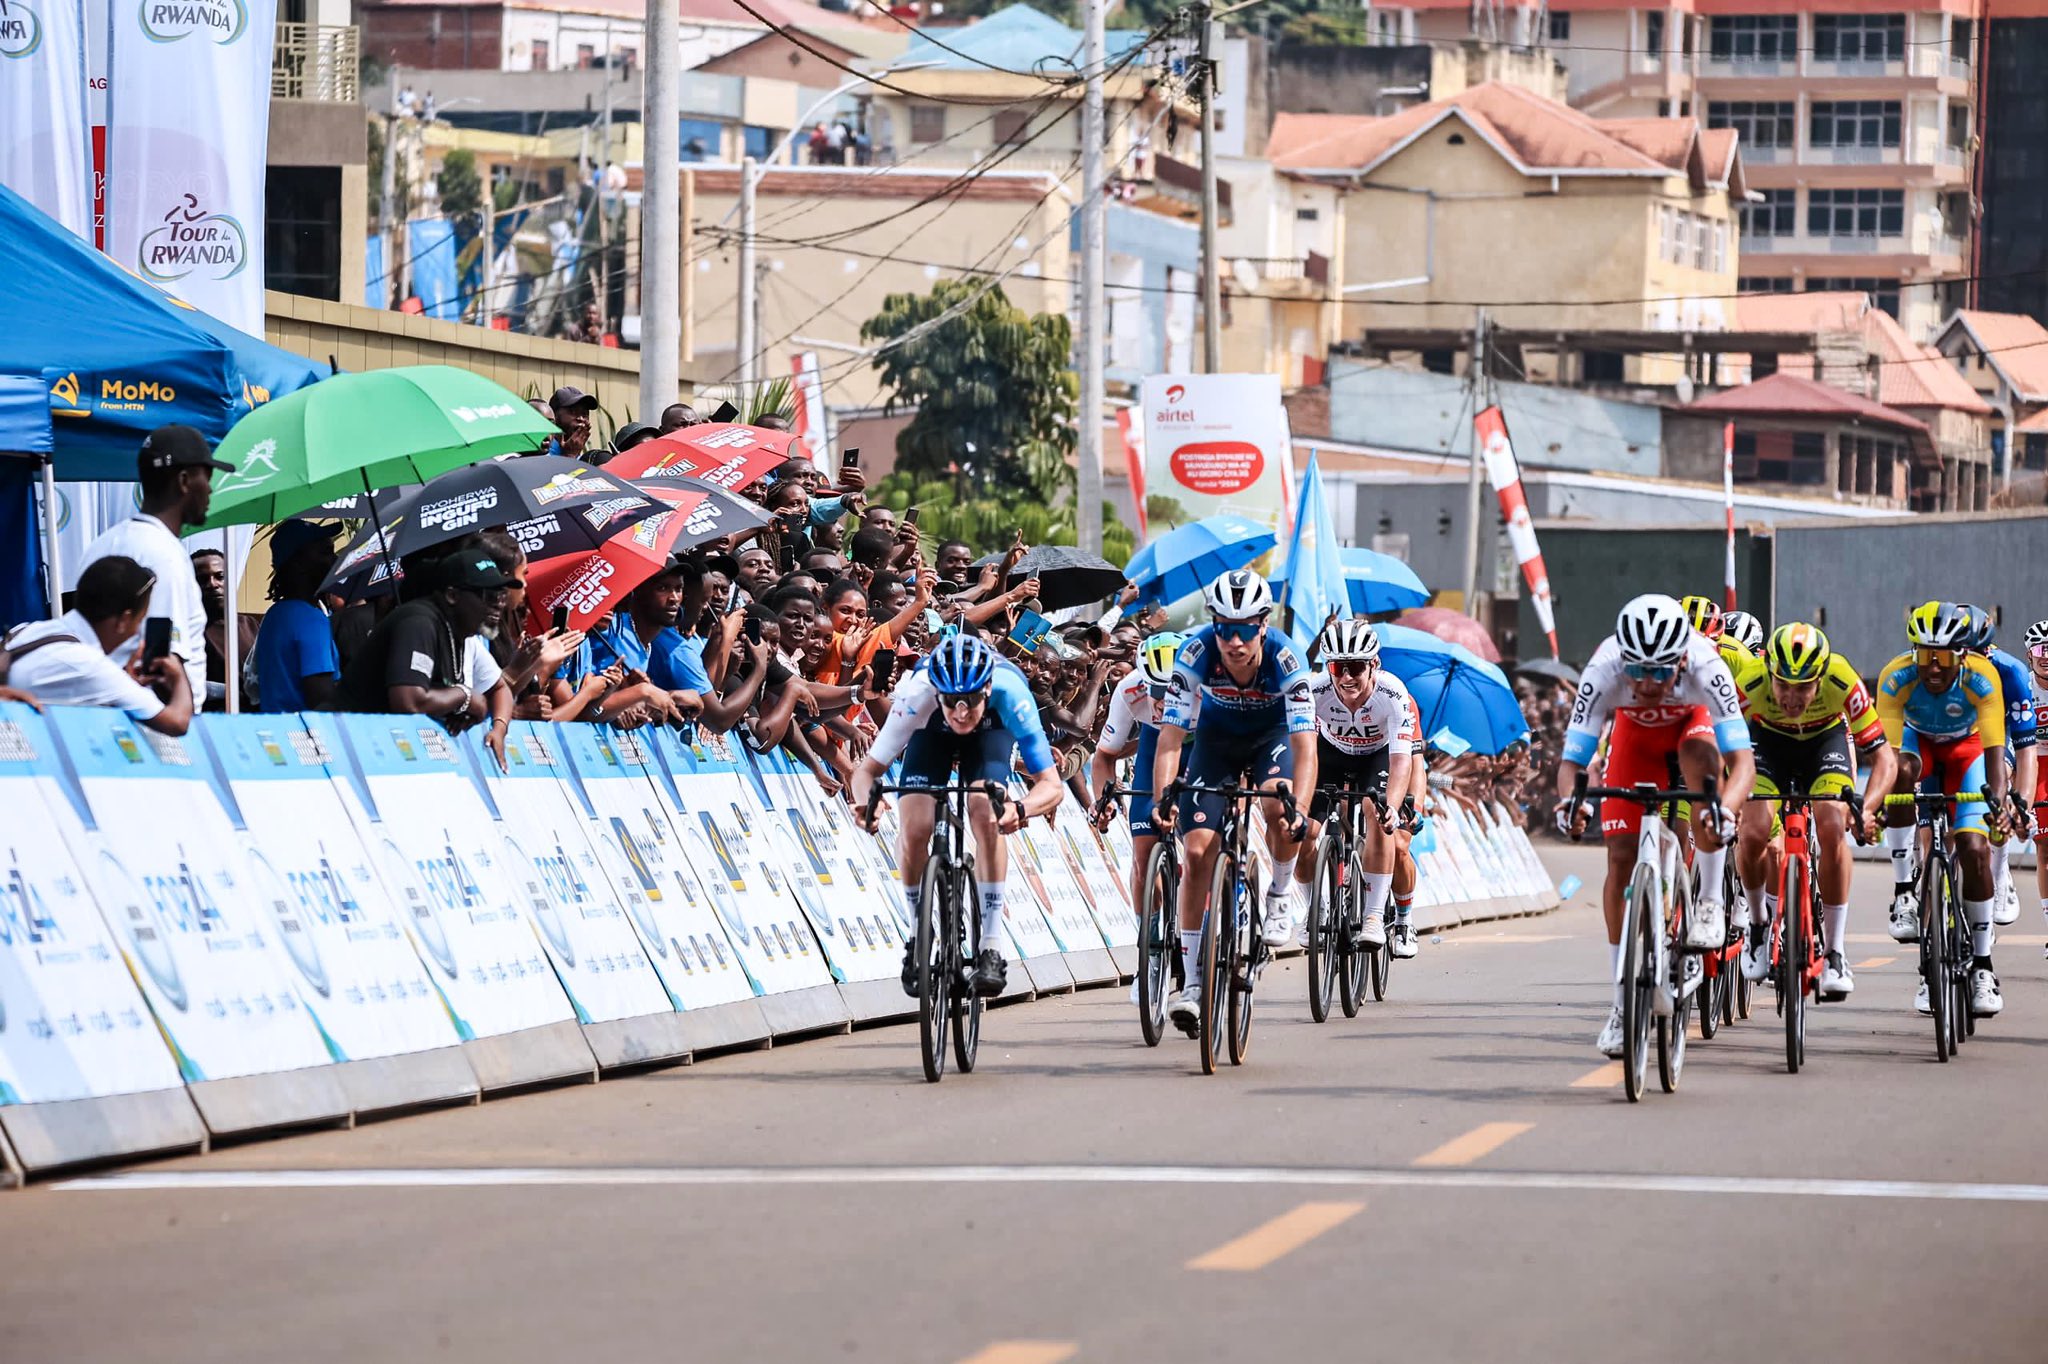 Classement de la 3ème étape du Tour of Rwanda, remportée par Jonathan Restrepo.